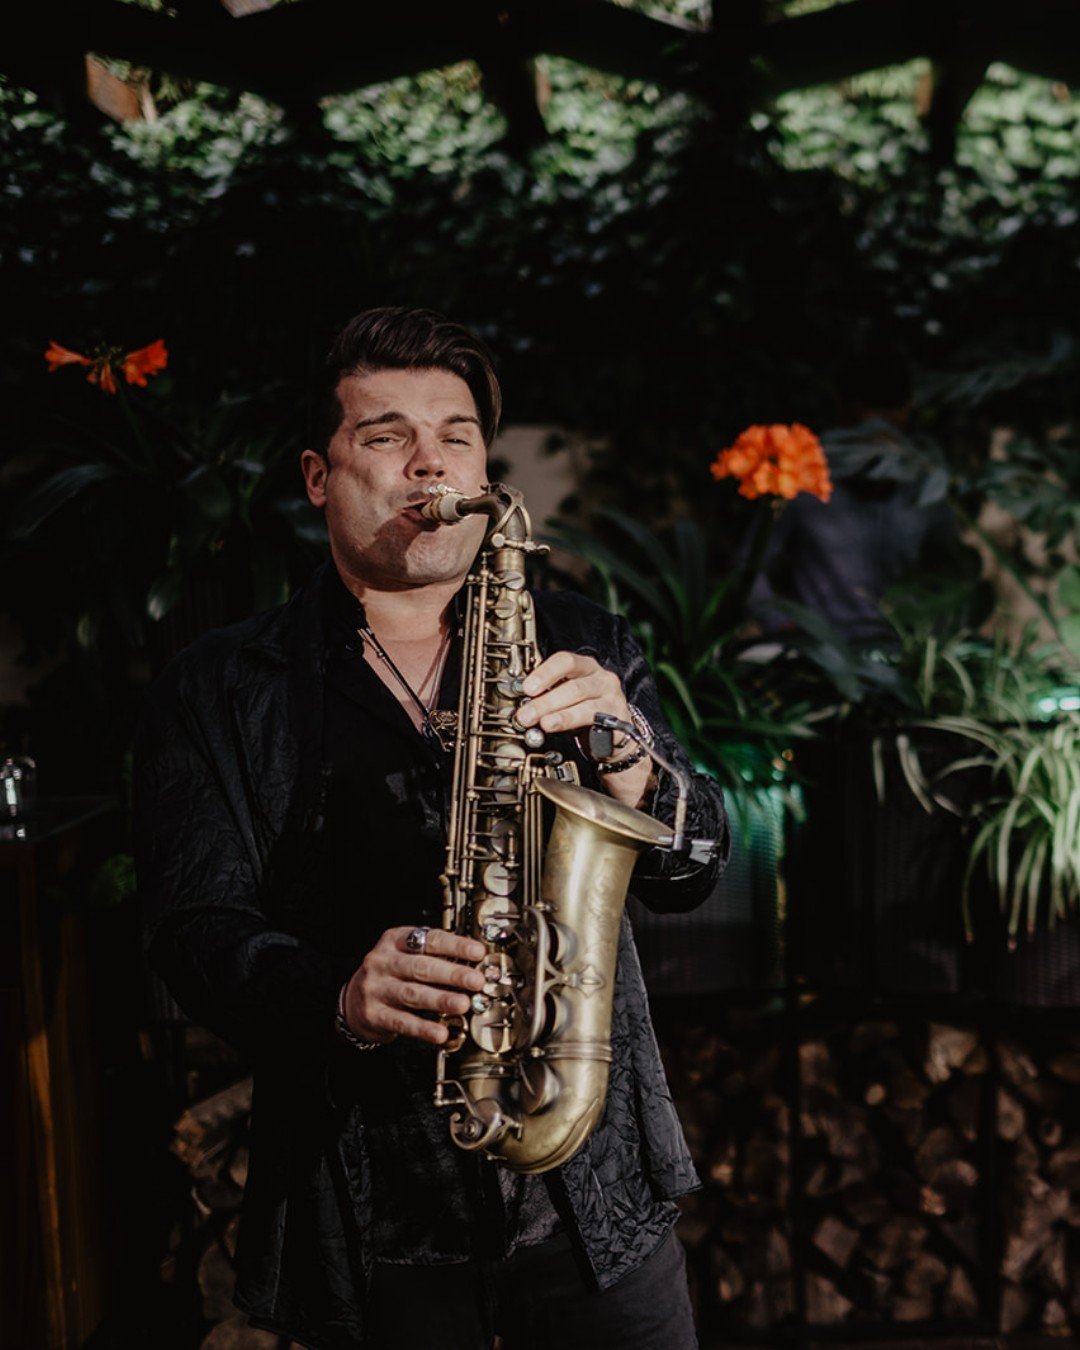 Venha conhecer o nosso saxofonista Ricardo Branco, maestro de momentos m&aacute;gico. ✨ Com o saxofone, transforma as suas noites em experi&ecirc;ncias inesquec&iacute;veis. Mas espere, h&aacute; mais! Para melhorar o momento, saboreie os nossos cock